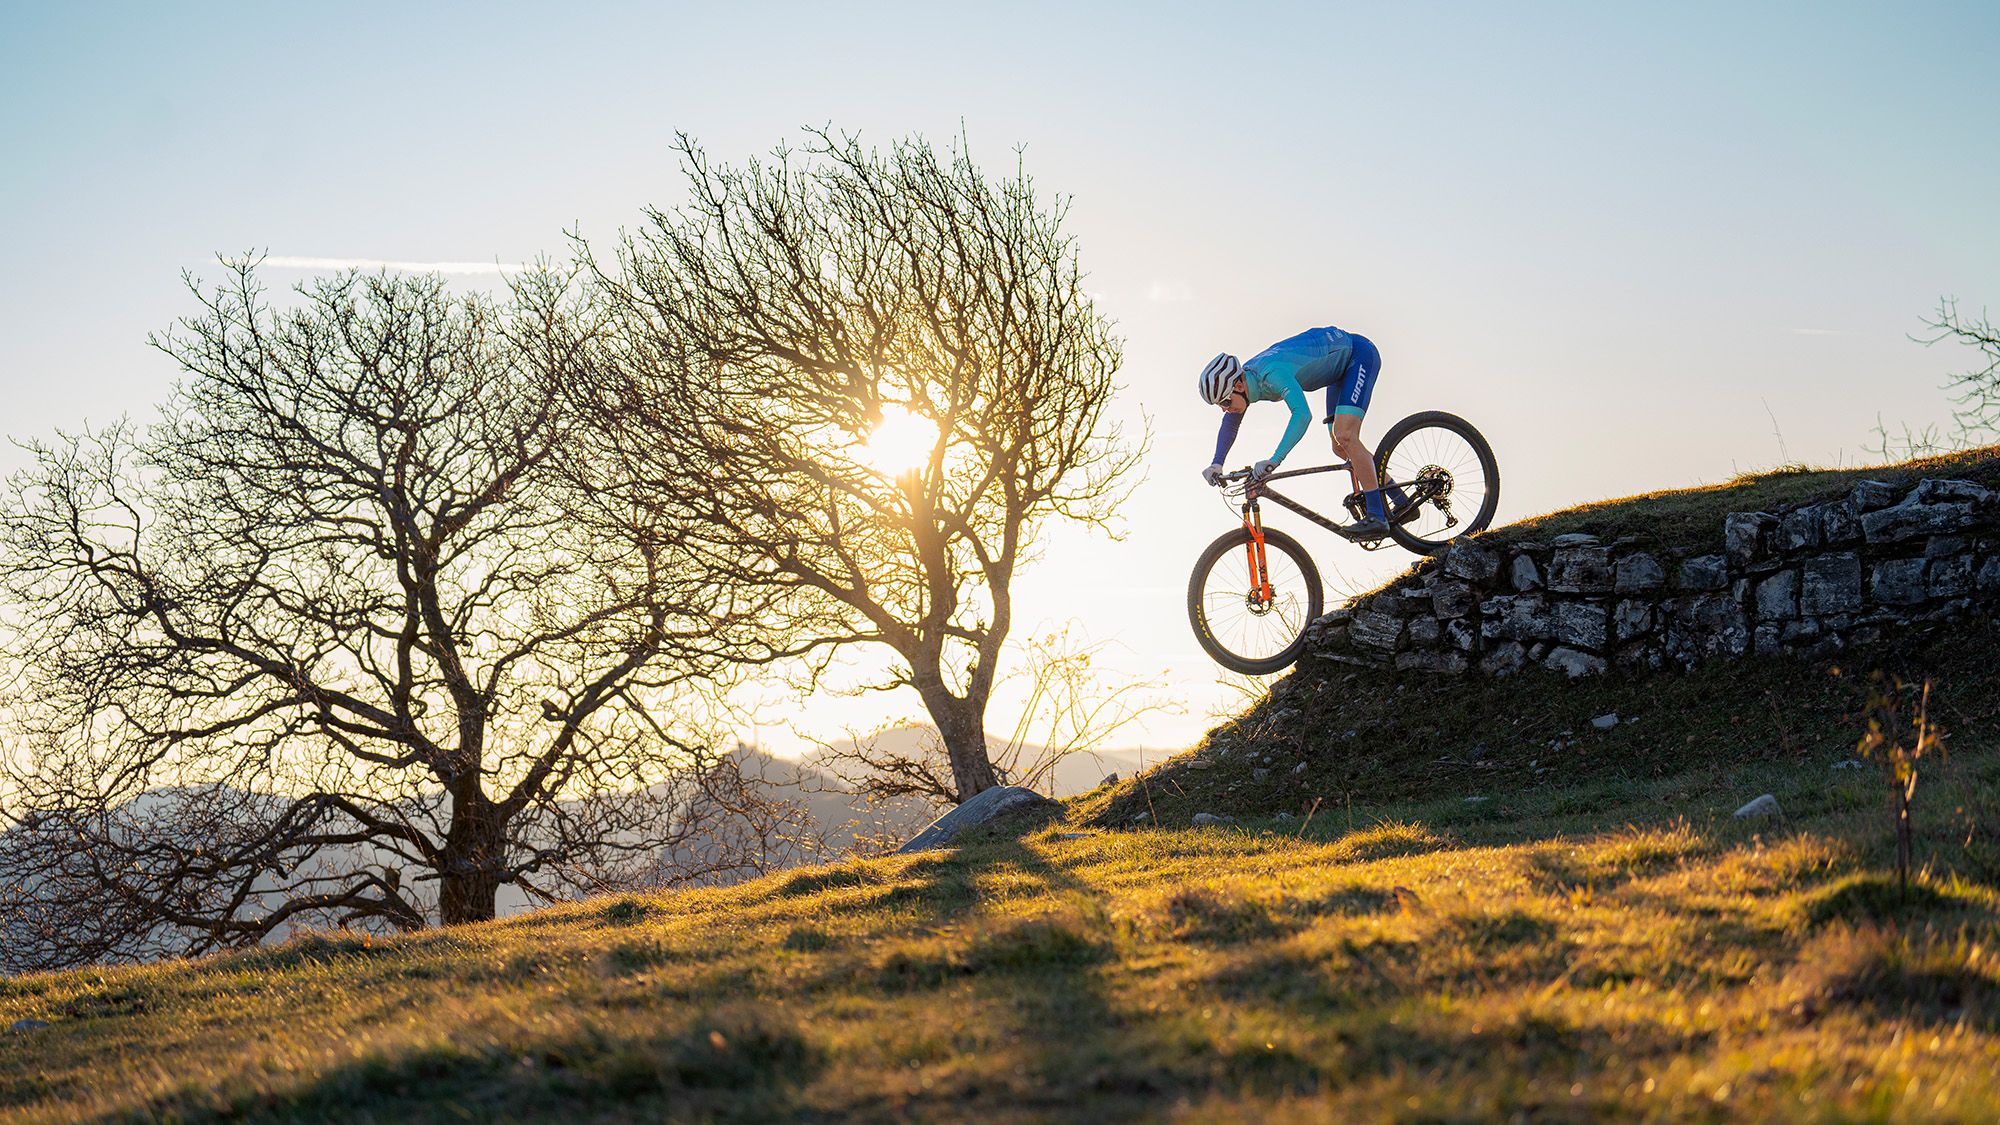 Ein Mountainbiker fährt einen steinernen Wall hinunter.